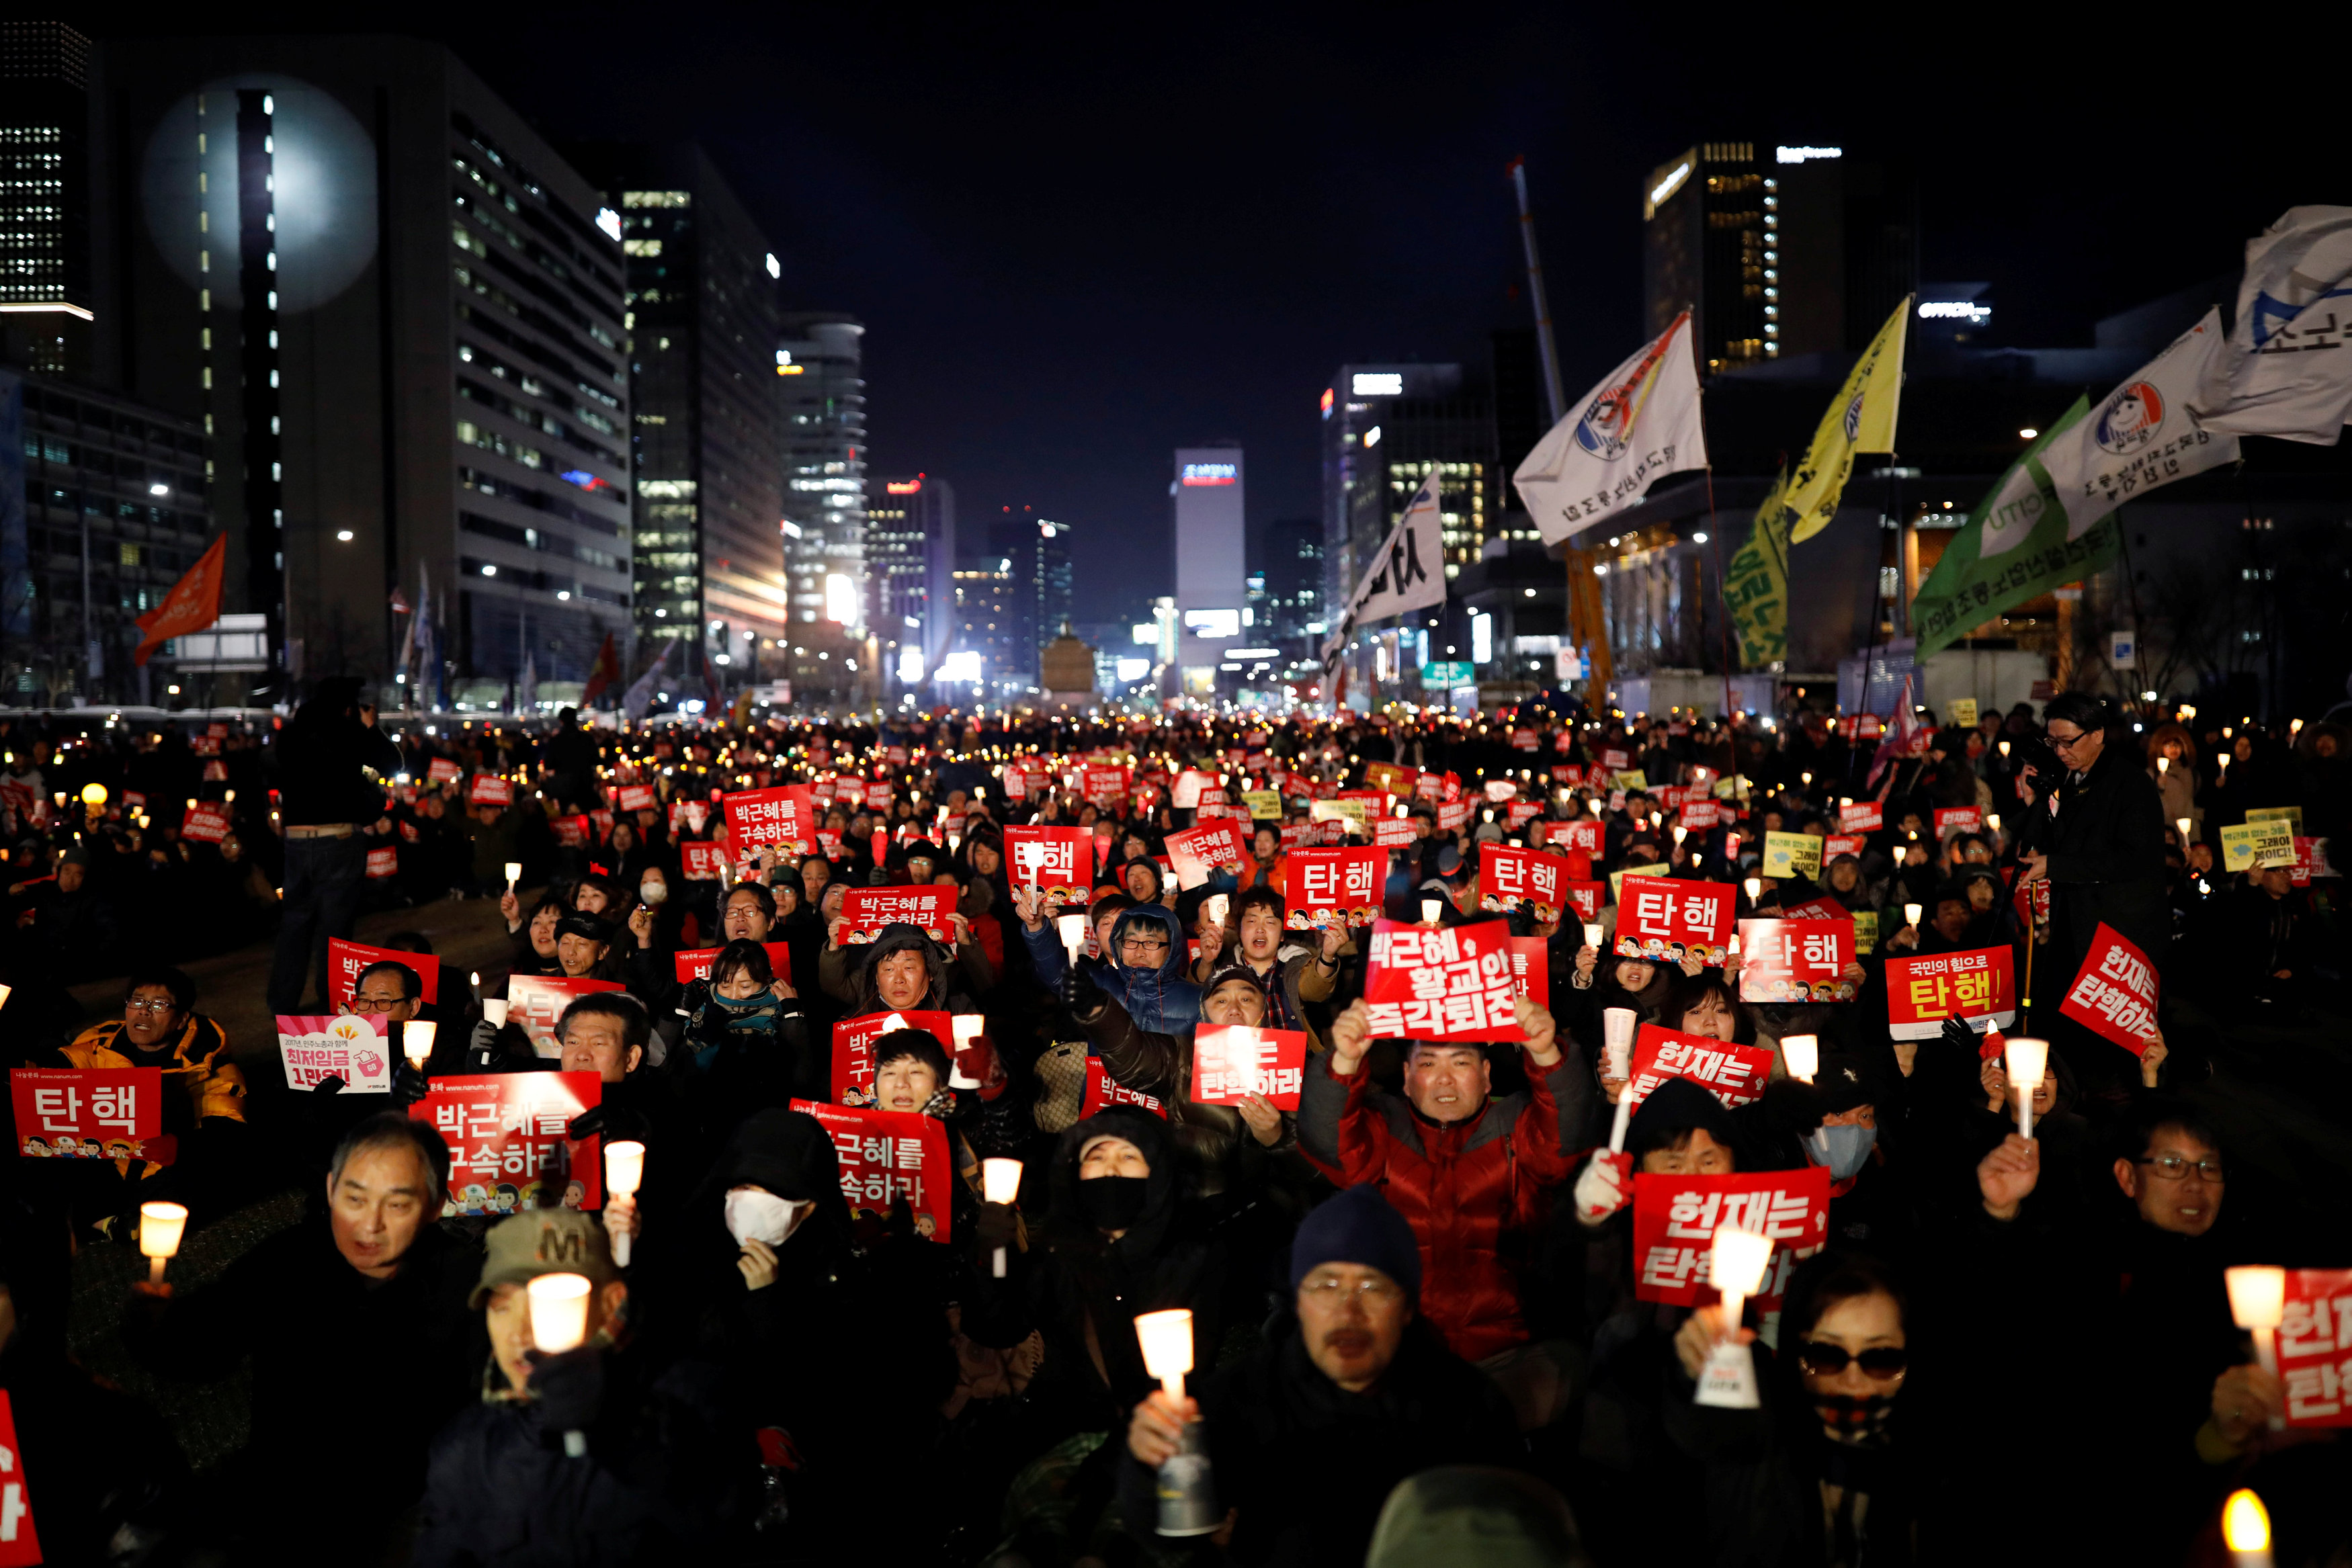 اندلاع مظاهرات فى كوريا الجنوبية تطالب باستقالة رئيسة البلاد